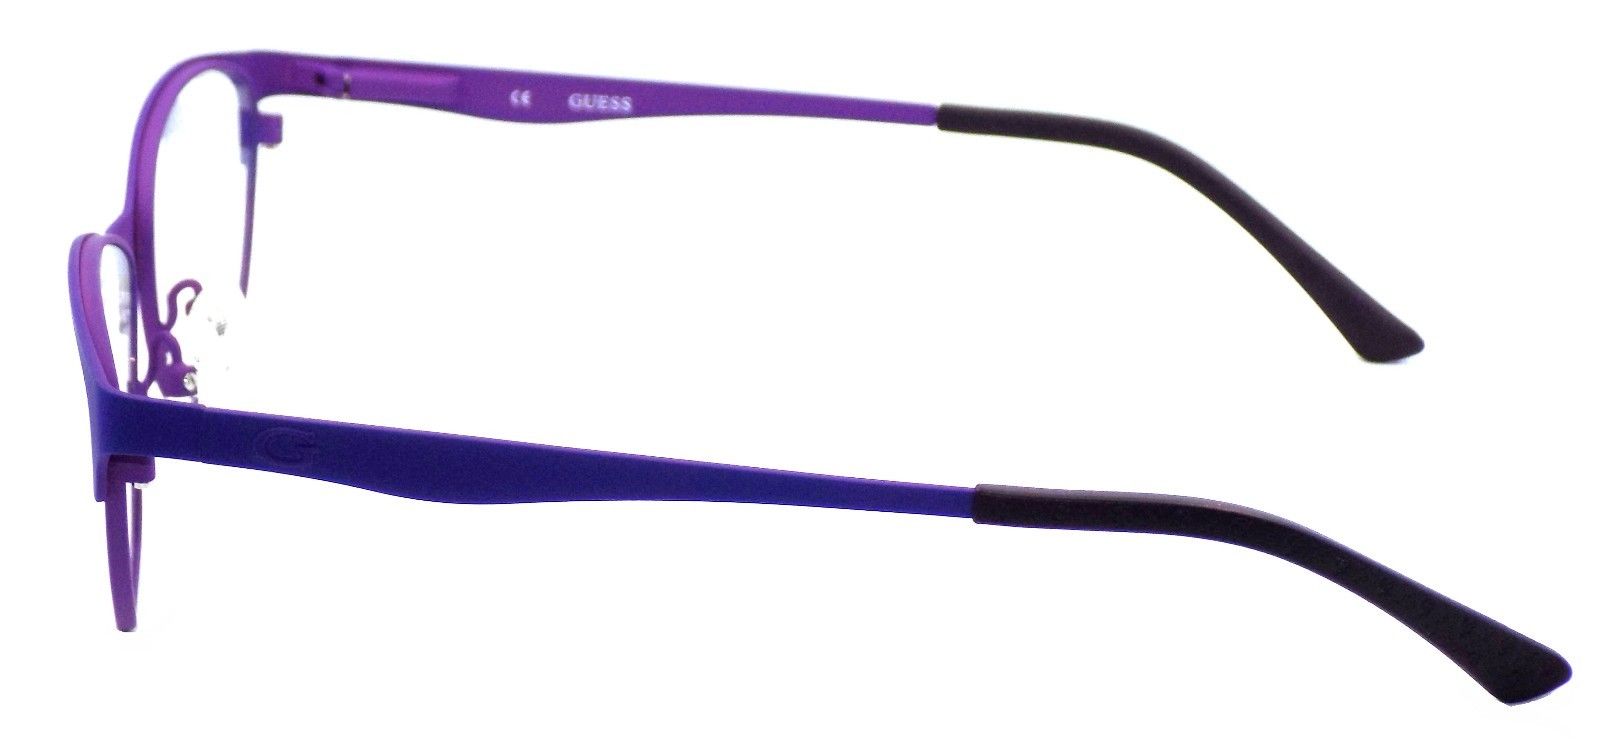 3-GUESS GU2504 079 Women's Eyeglasses Frames 53-15-135 Matte Lilac + CASE-664689697632-IKSpecs